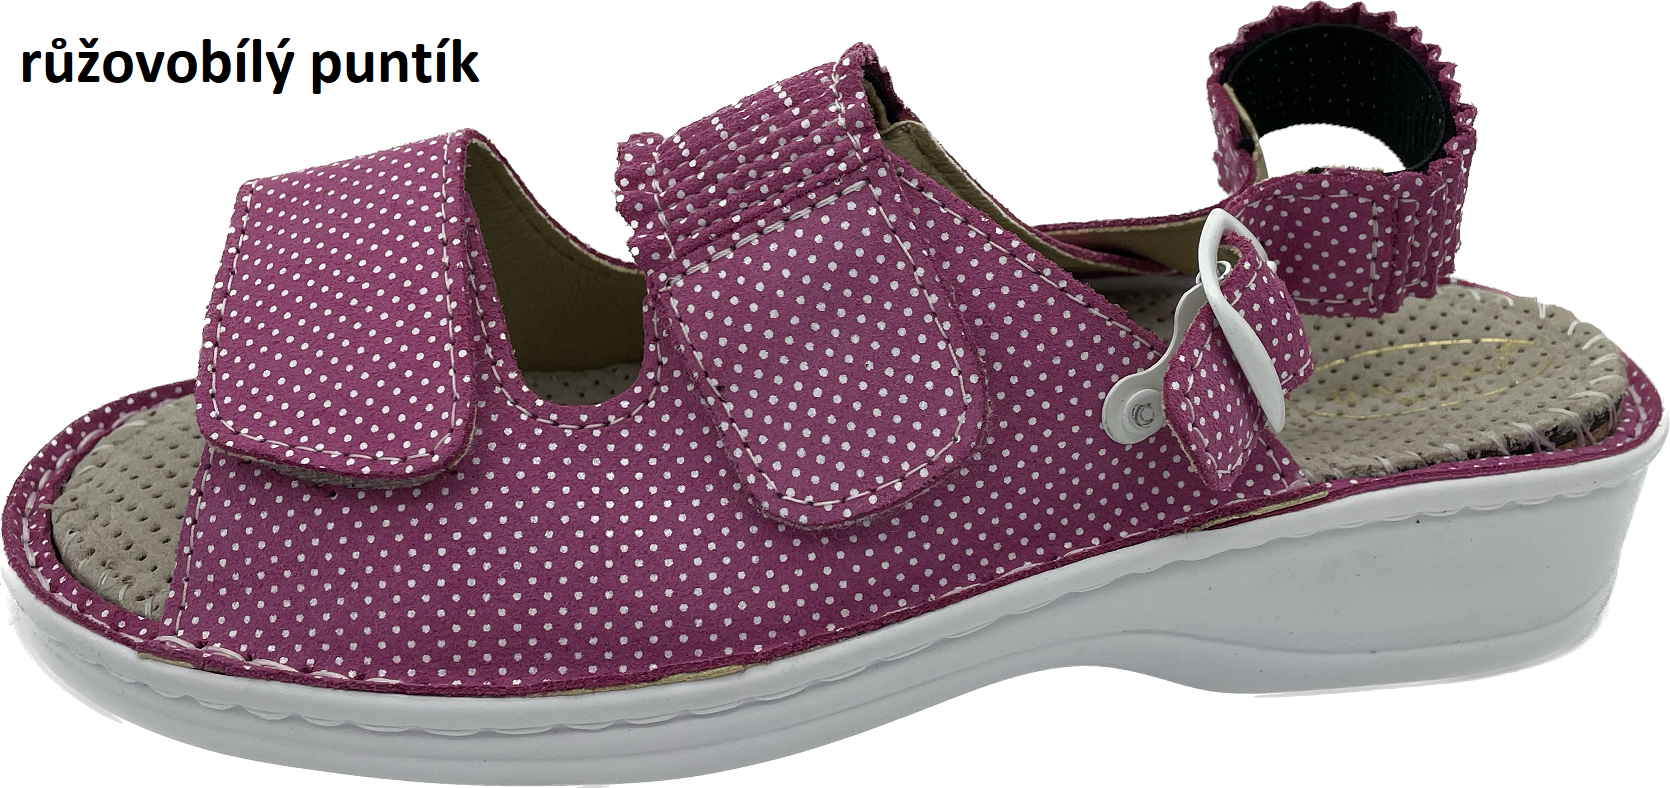 Boty Hanák vzor 304 P - bílá podešev Barva usně: růžovobílý puntík jemný, Velikosti obuvi: 39